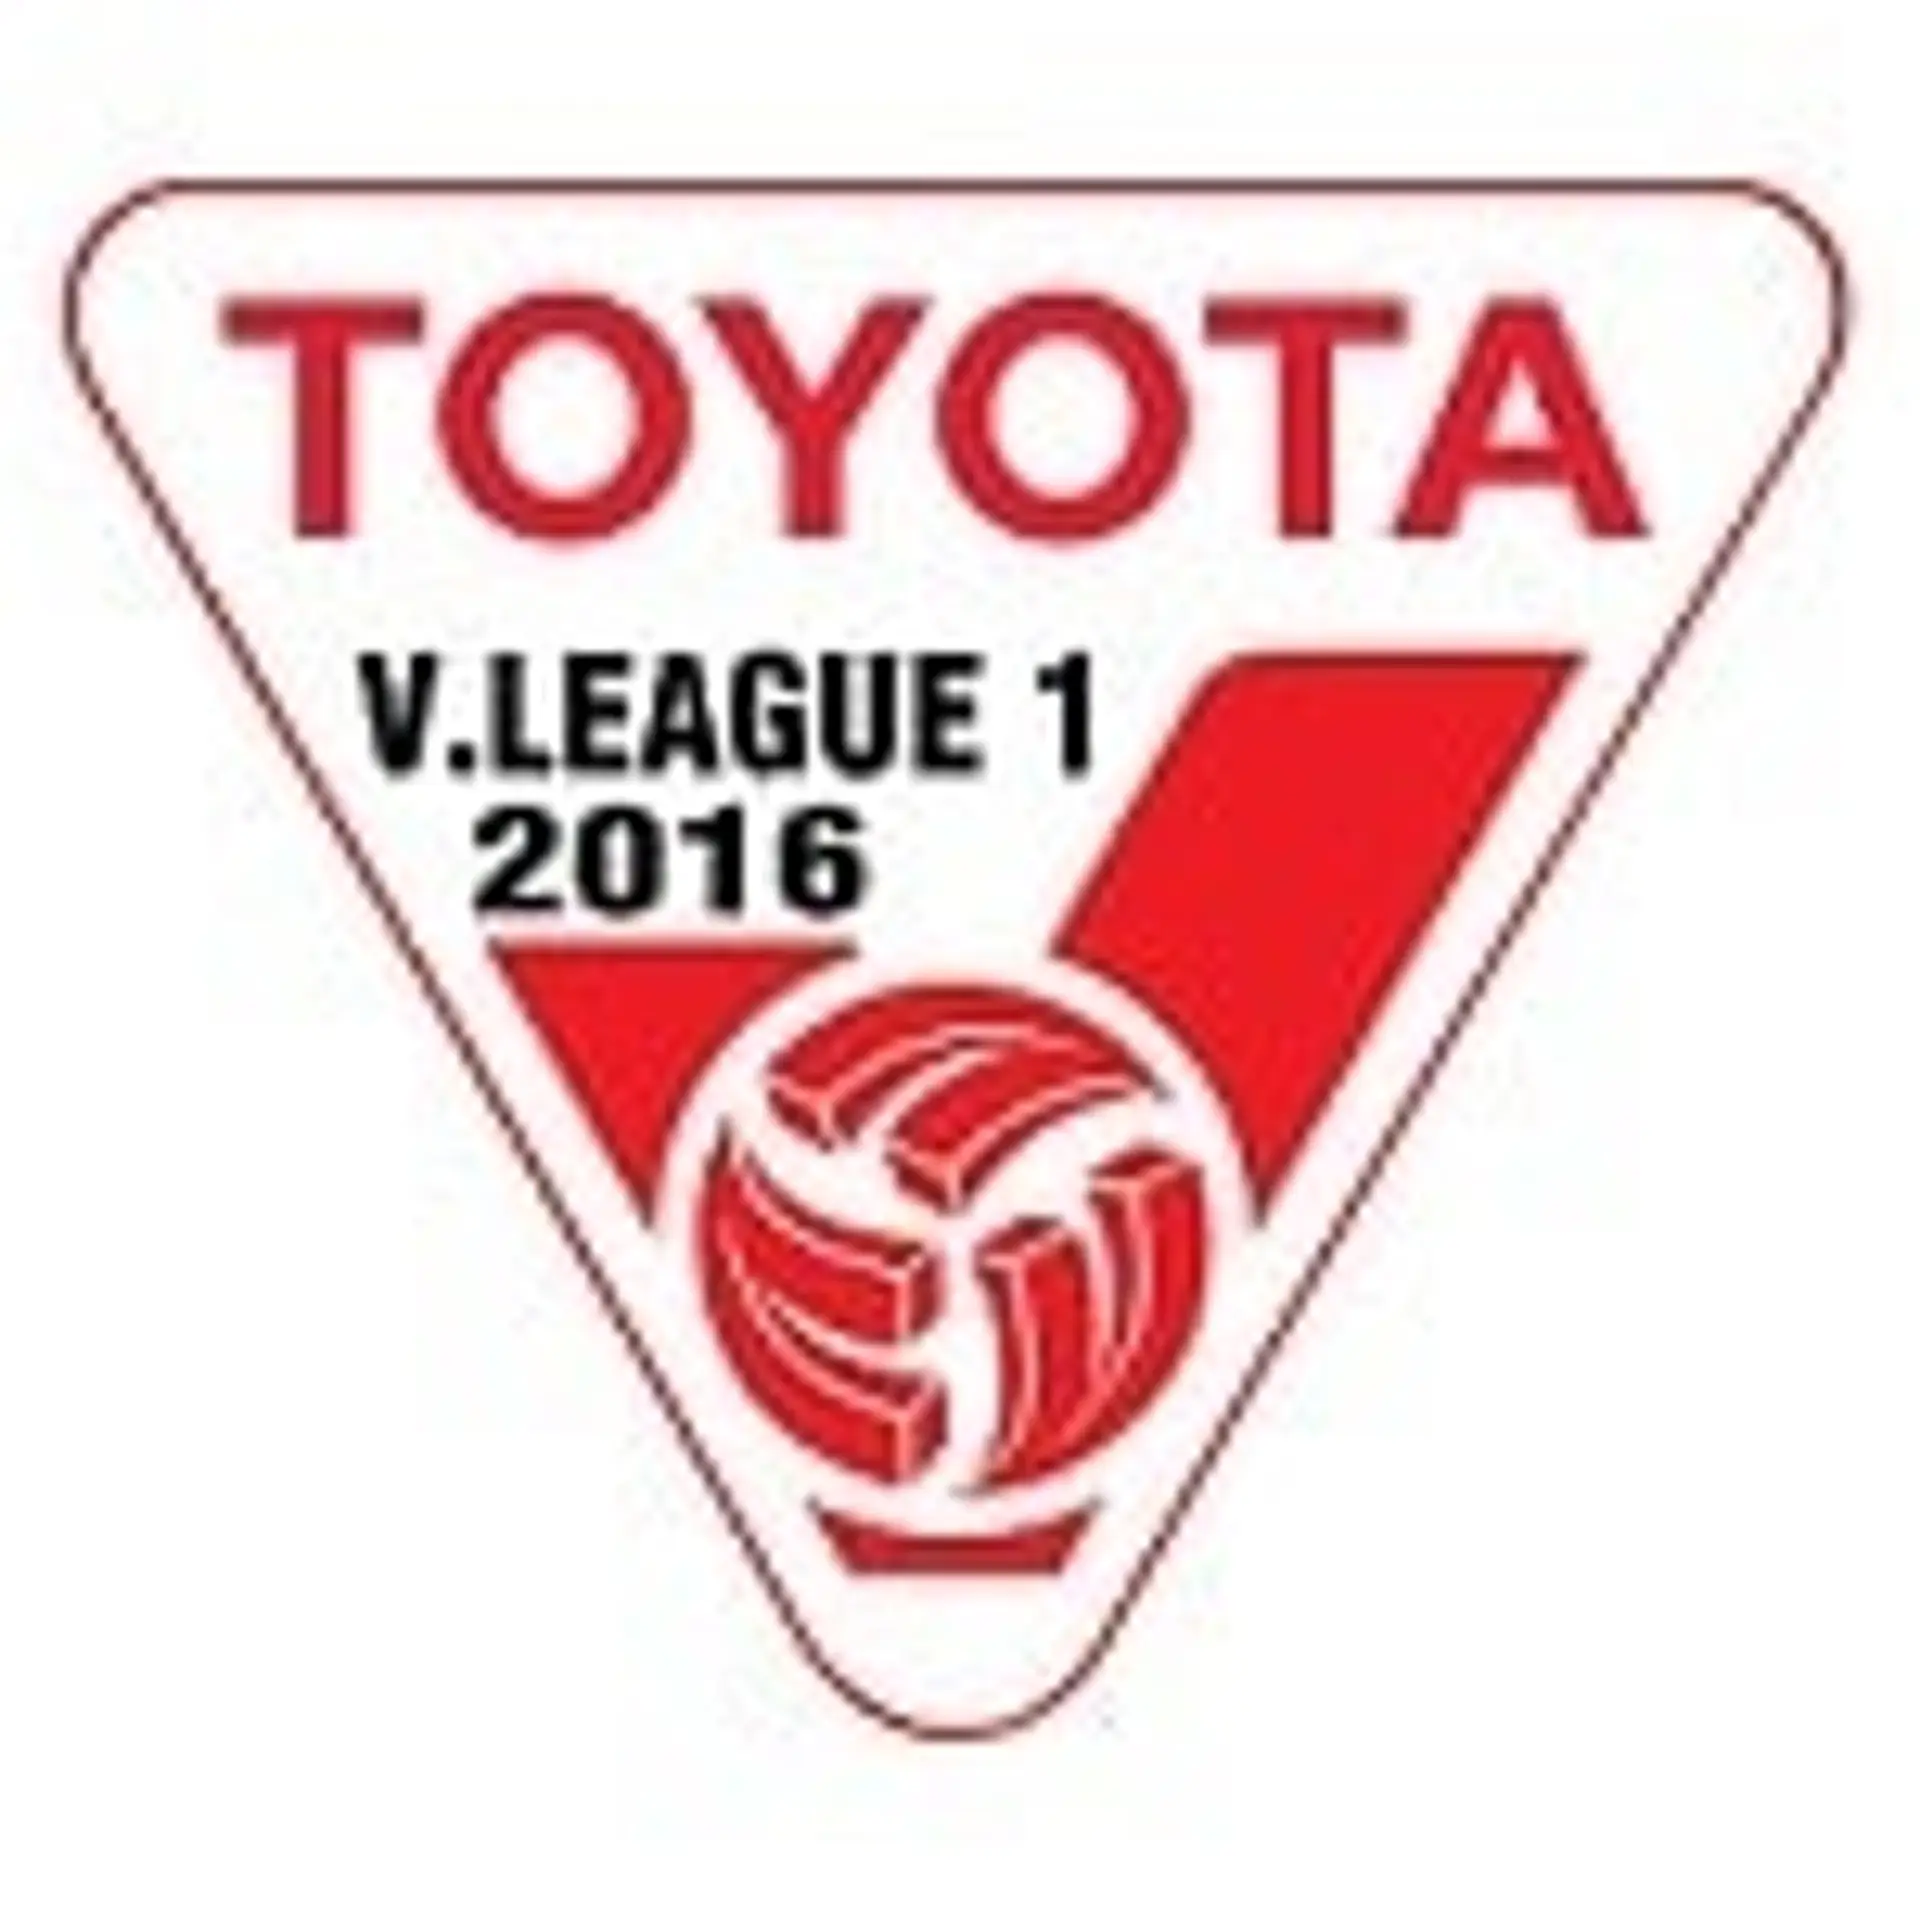 V-League